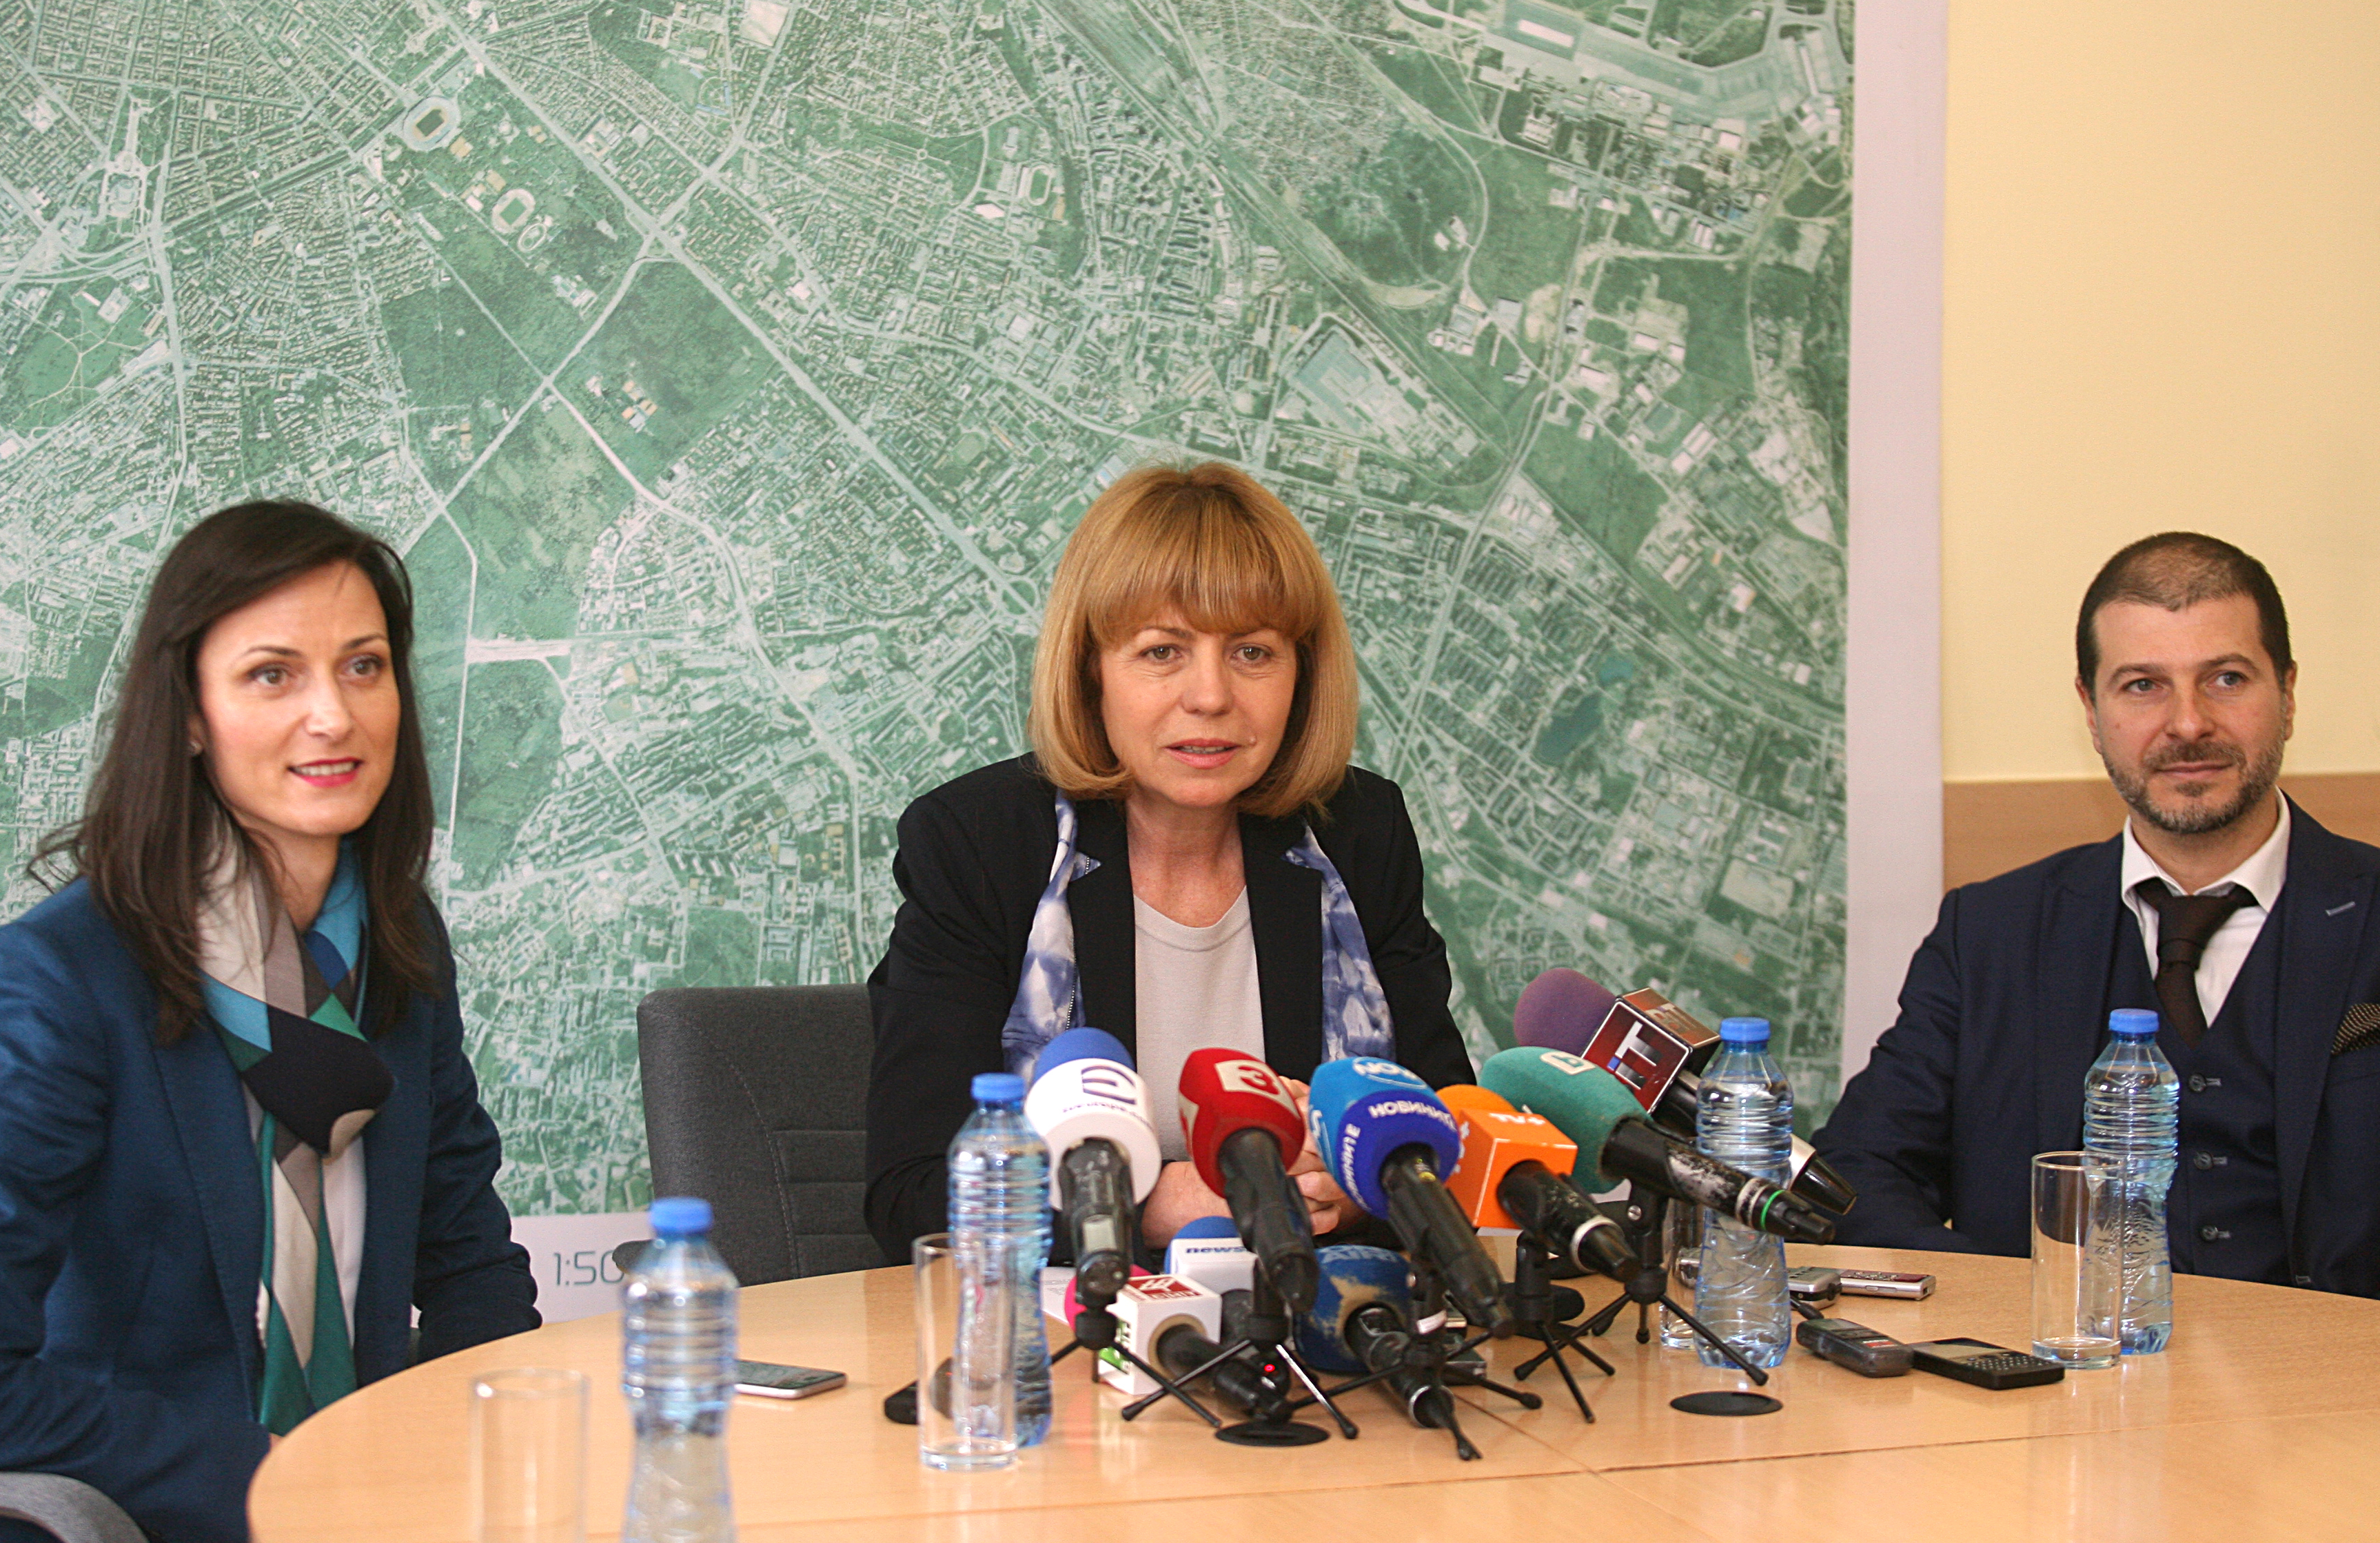 Йорданка Фандъкова е кандидатът на ГЕРБ за четвърти мандат. Тя стана кмет 2009 година, когато довърши мандата на Бойко Борисов. Тя спечели изборите 2011 година и 2015 година.